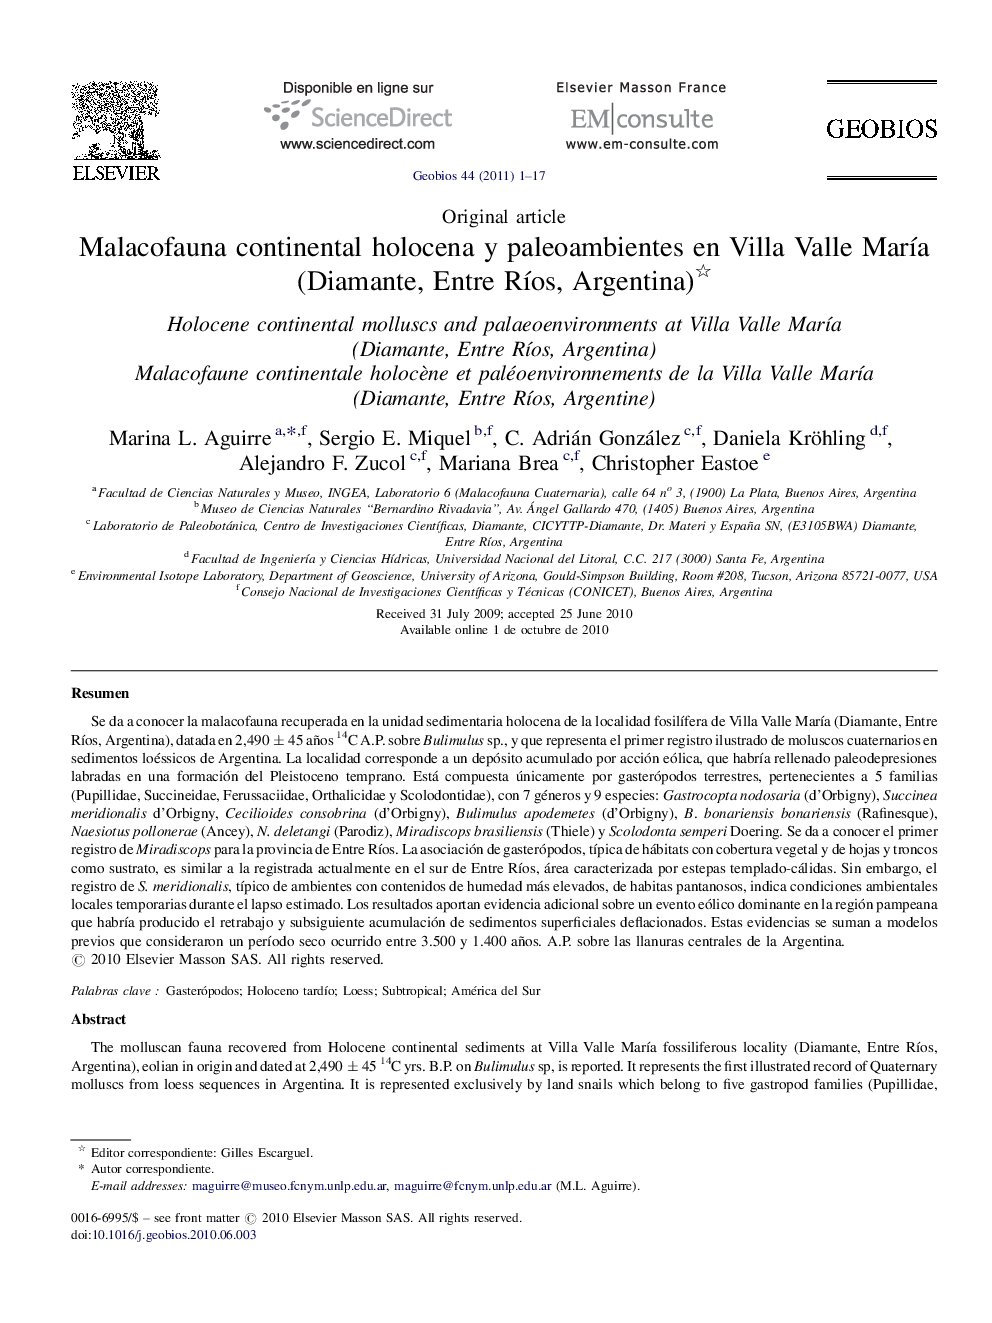 Malacofauna continental holocena y paleoambientes en Villa Valle María (Diamante, Entre Ríos, Argentina) 